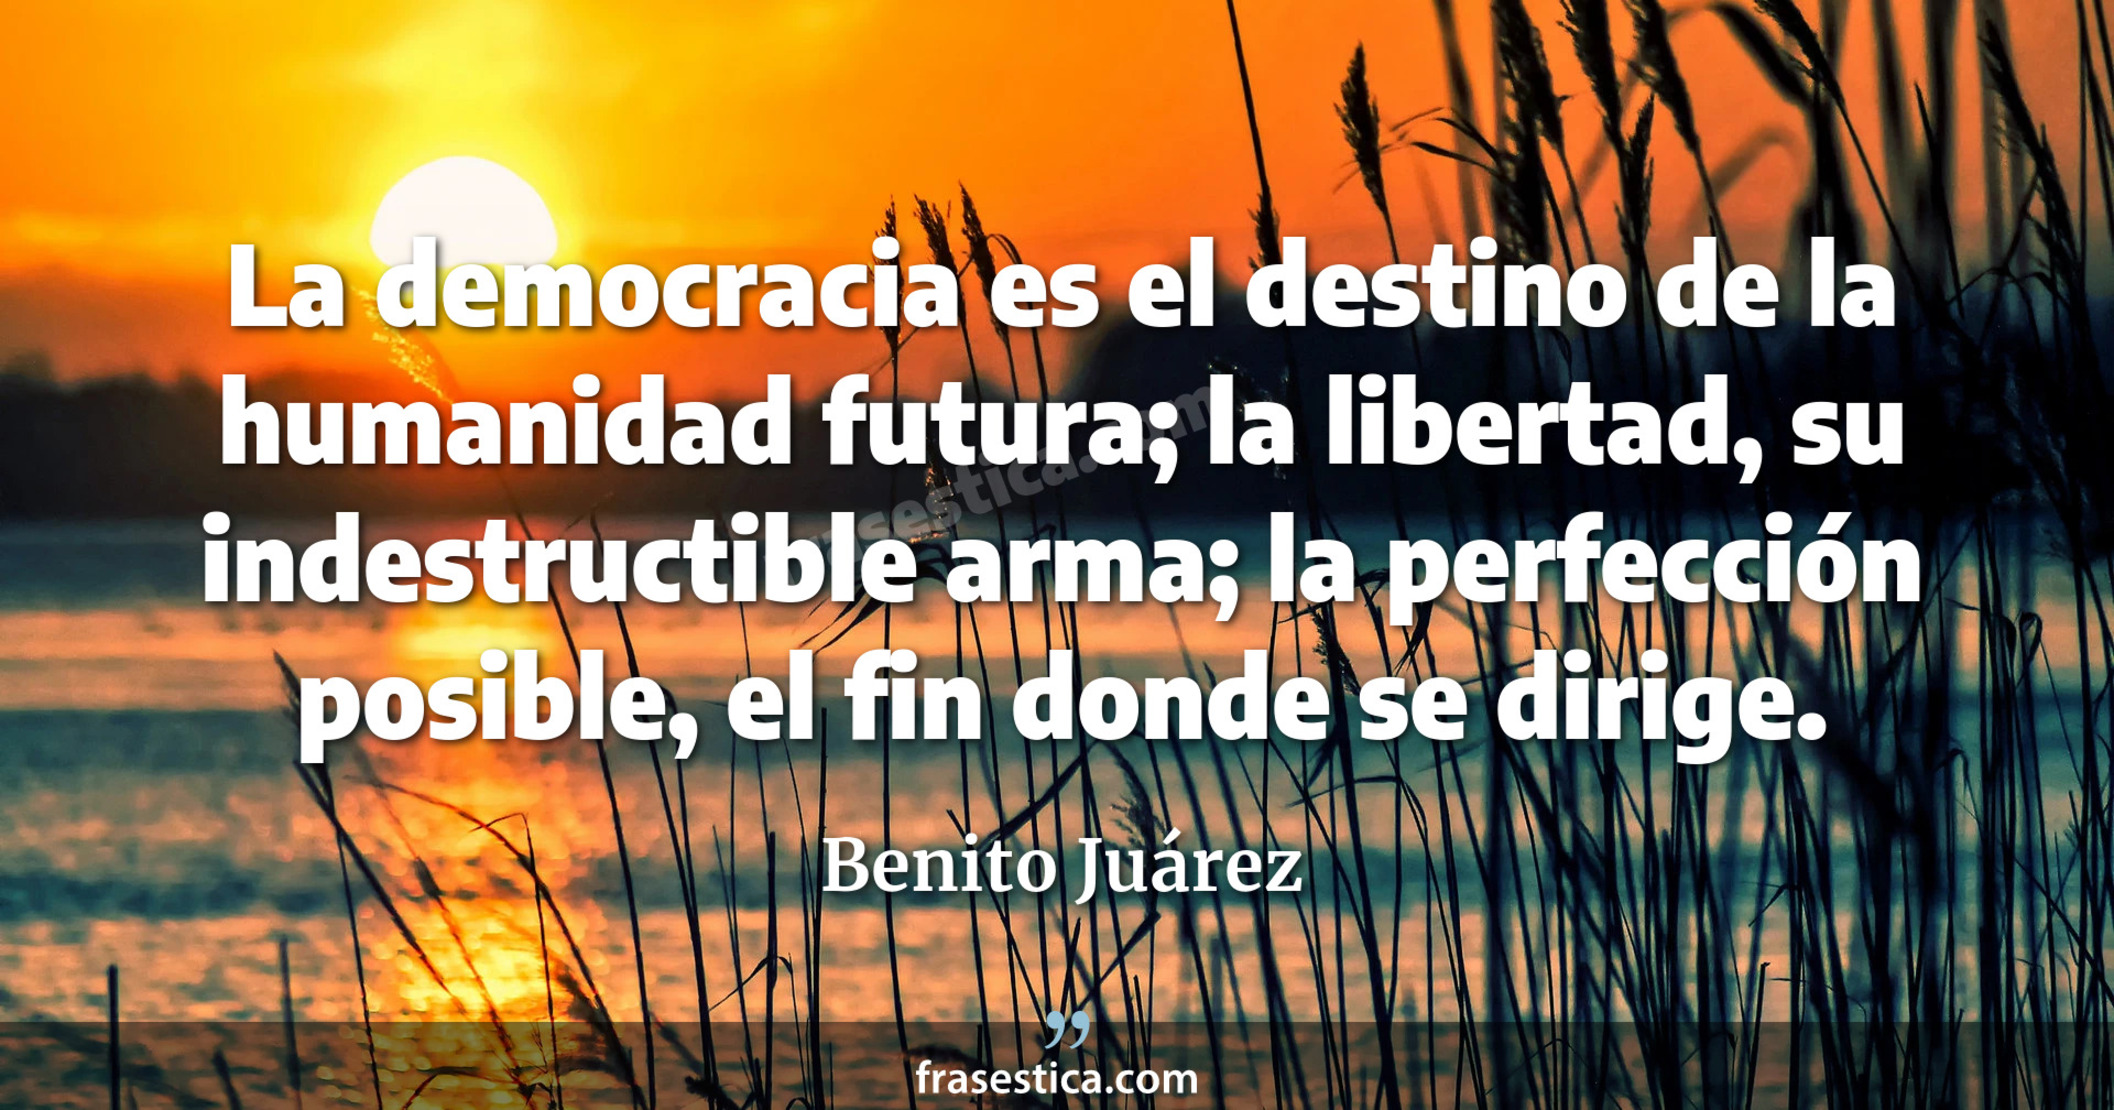 La democracia es el destino de la humanidad futura; la libertad, su indestructible arma; la perfección posible, el fin donde se dirige. - Benito Juárez